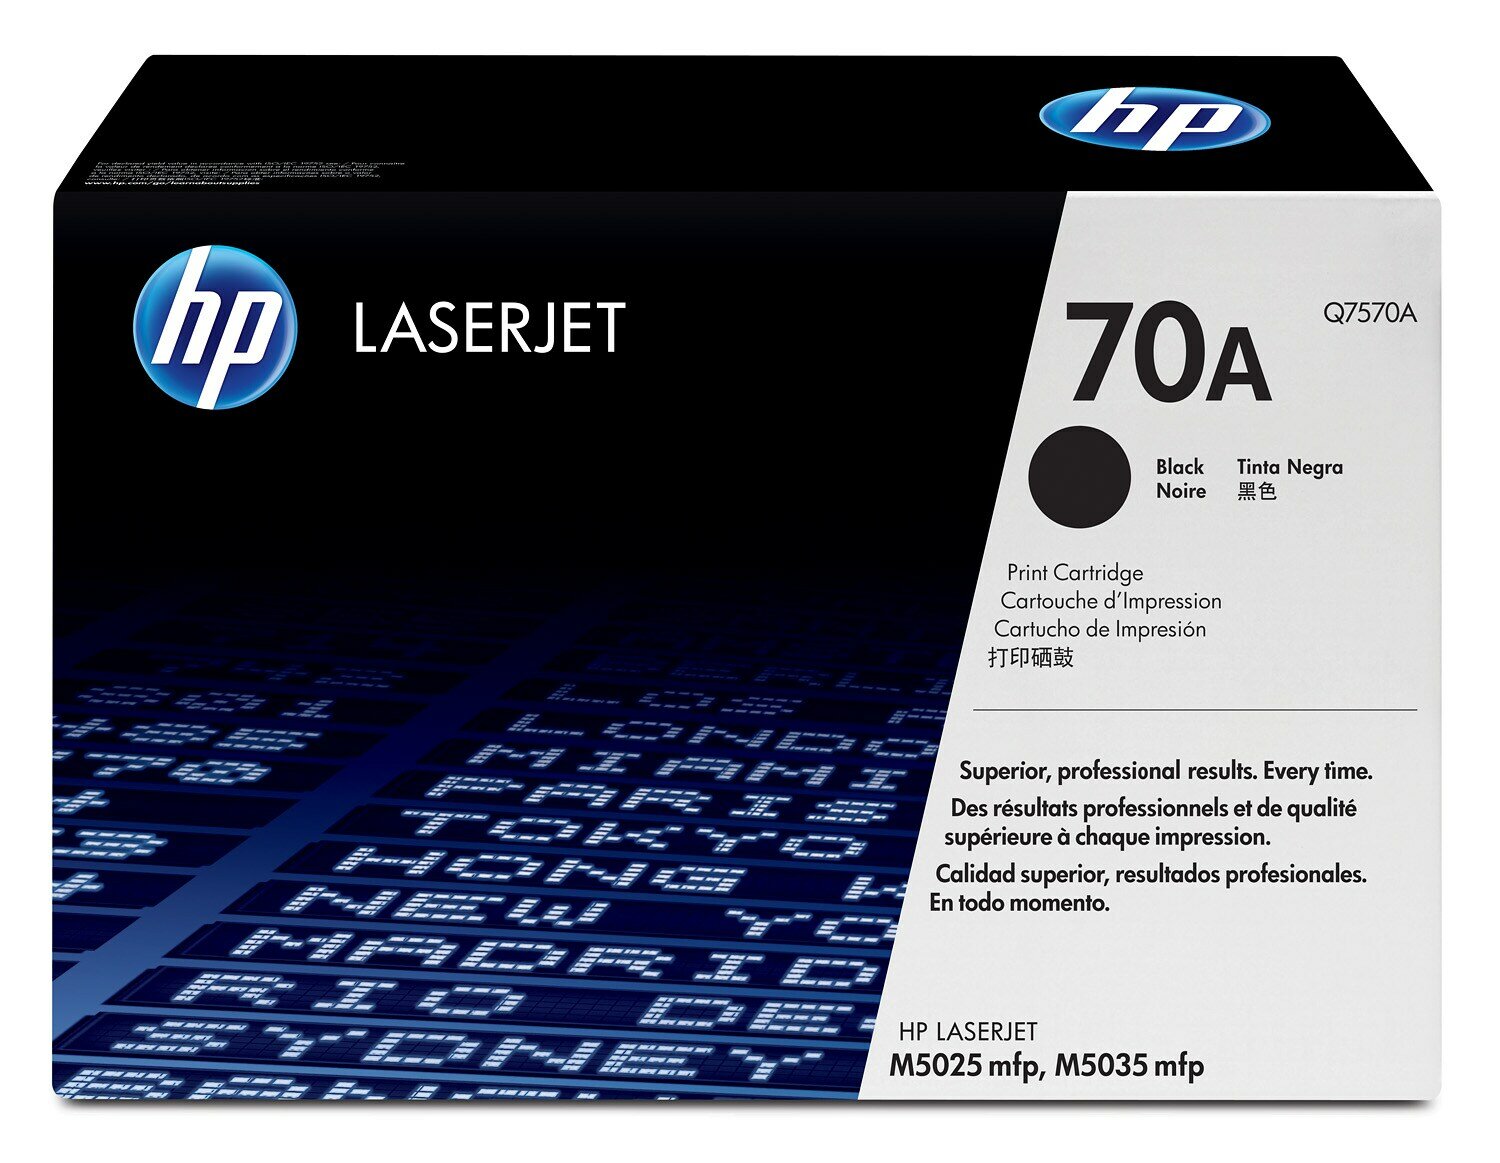 Картридж для печати HP Картридж HP 70A Q7570A вид печати лазерный, цвет Черный, емкость